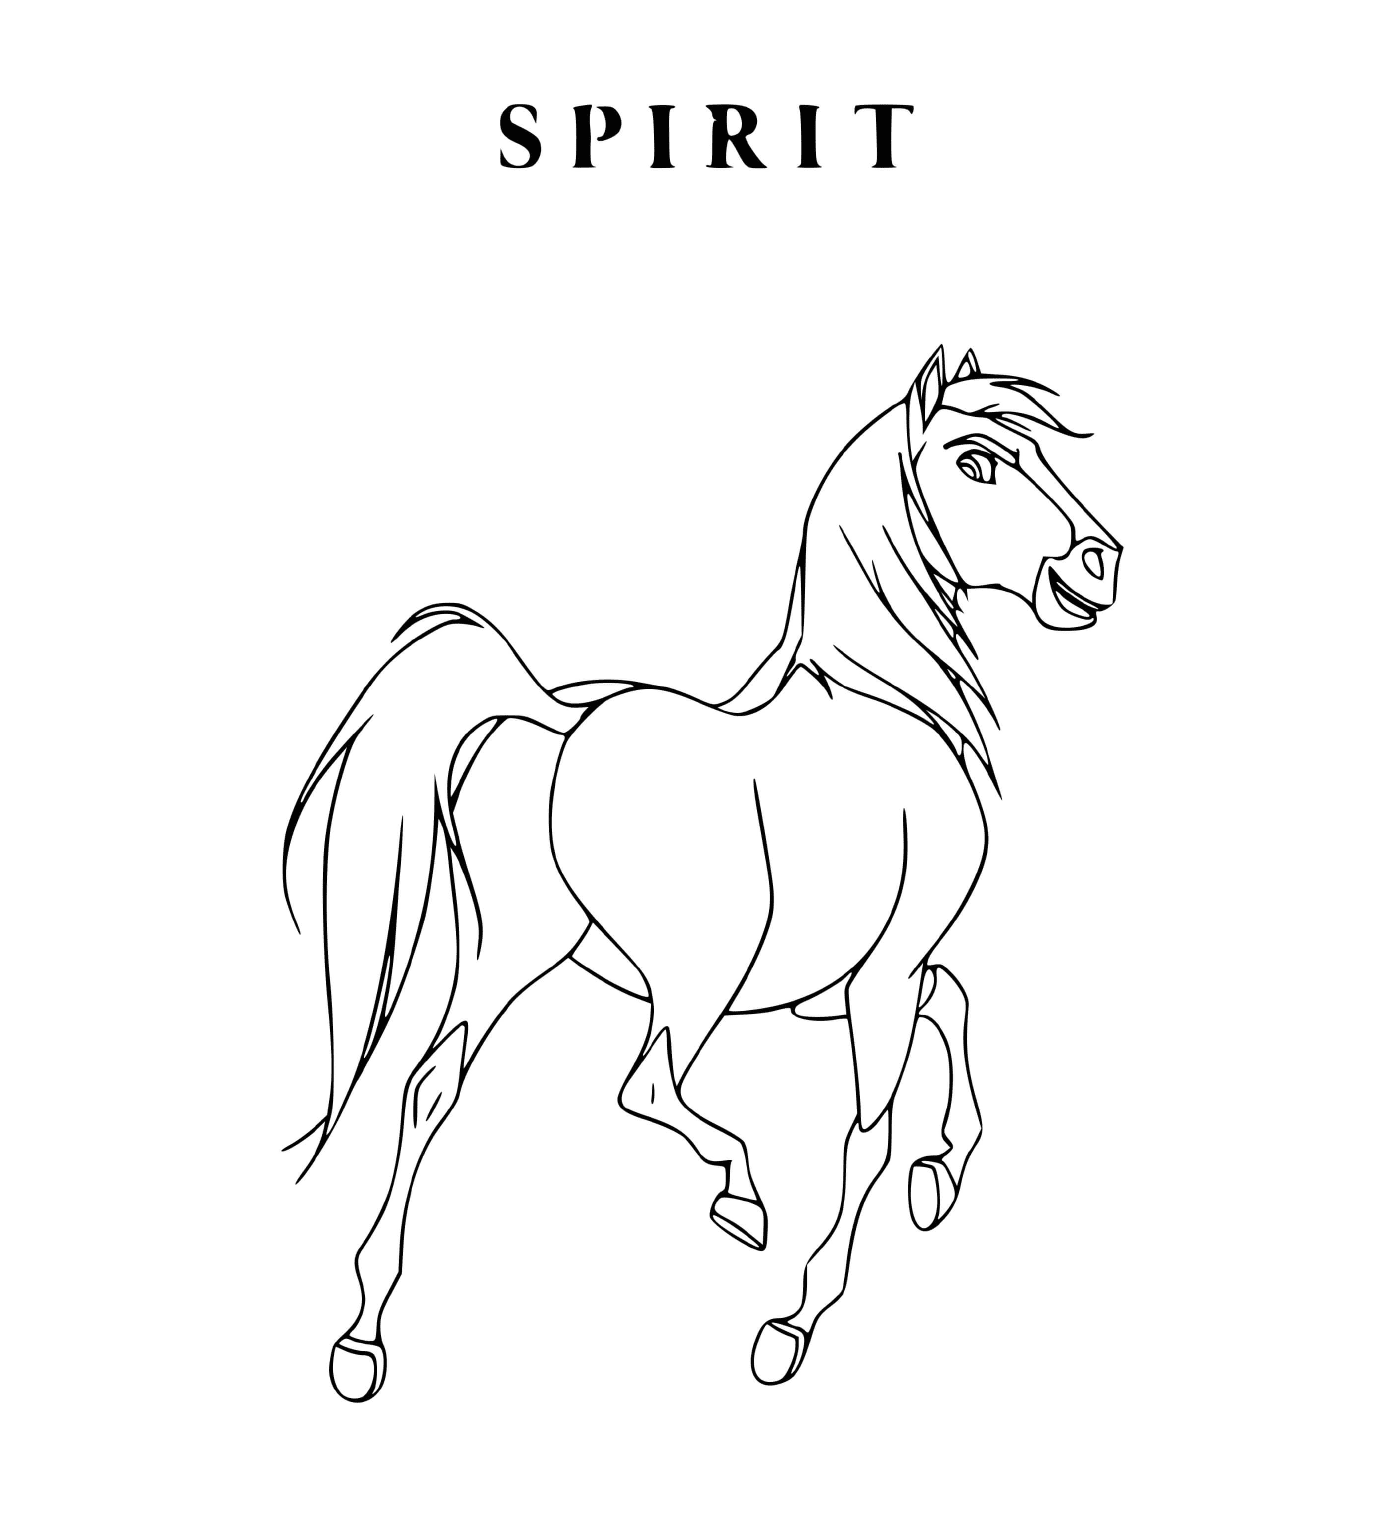  Spirito, cavallo che trova il suo 